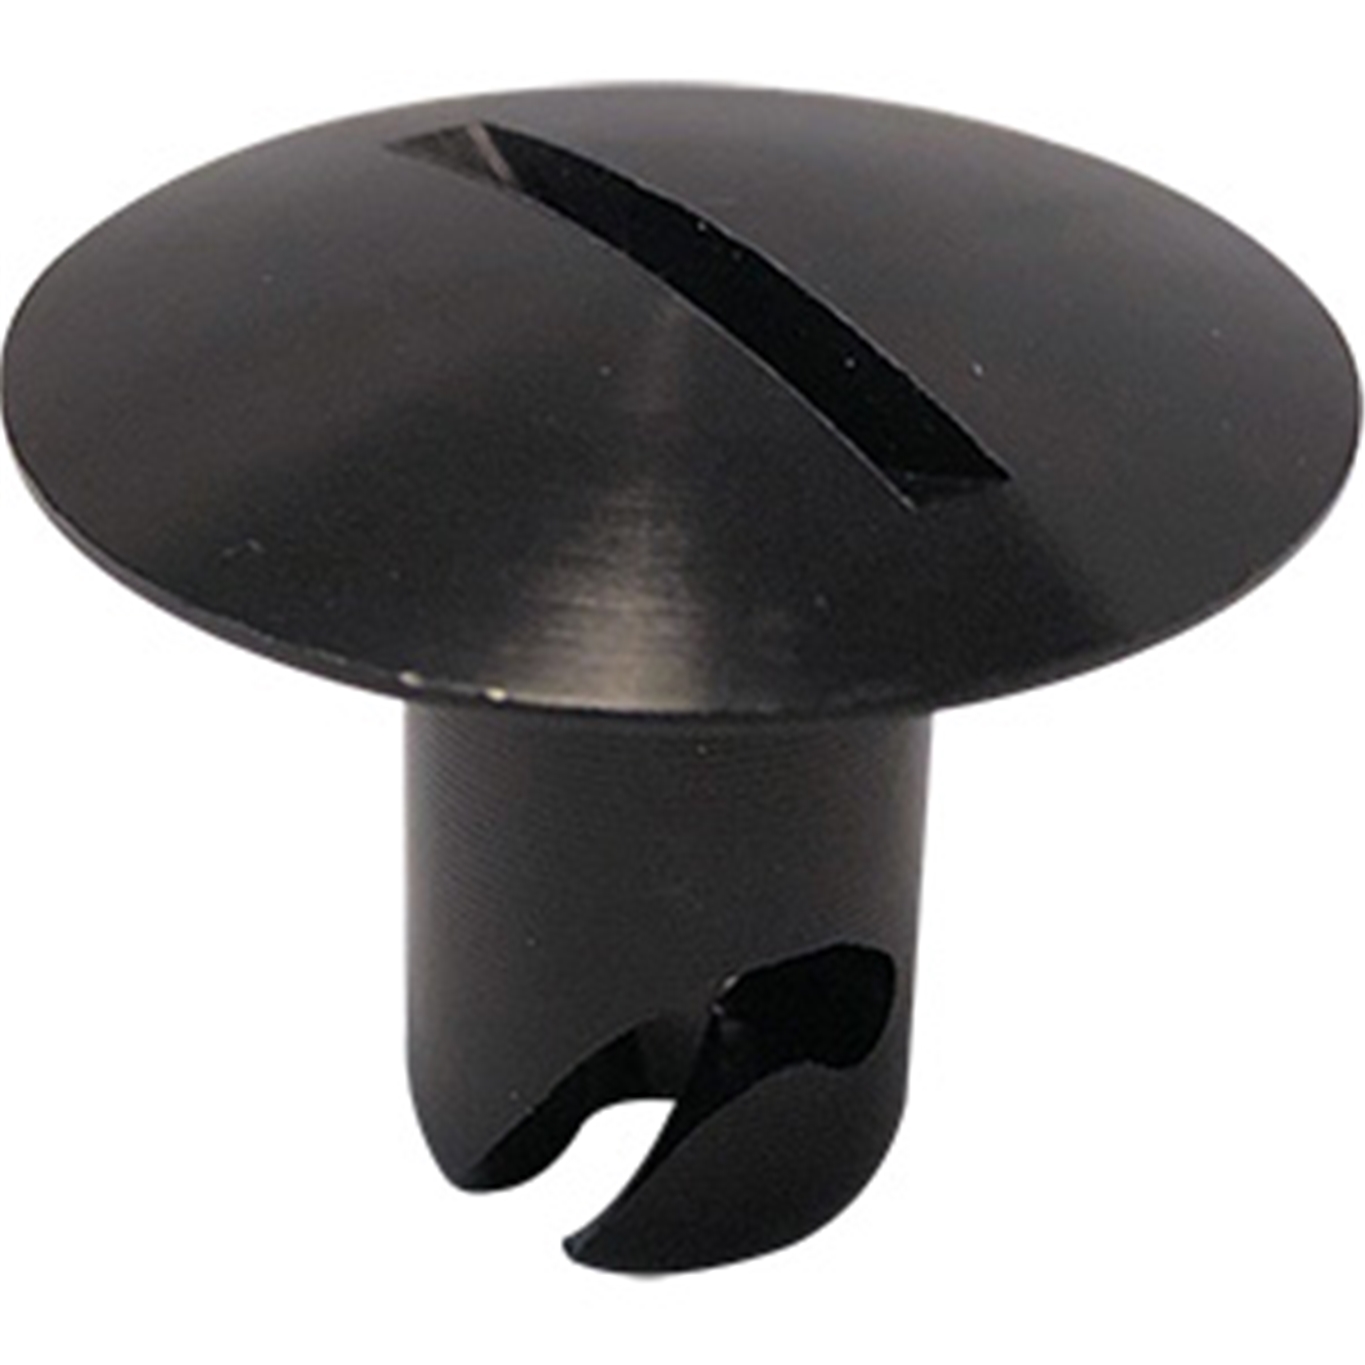 Panelfast Black Big Oval Head Steel 7/16".450 Grip